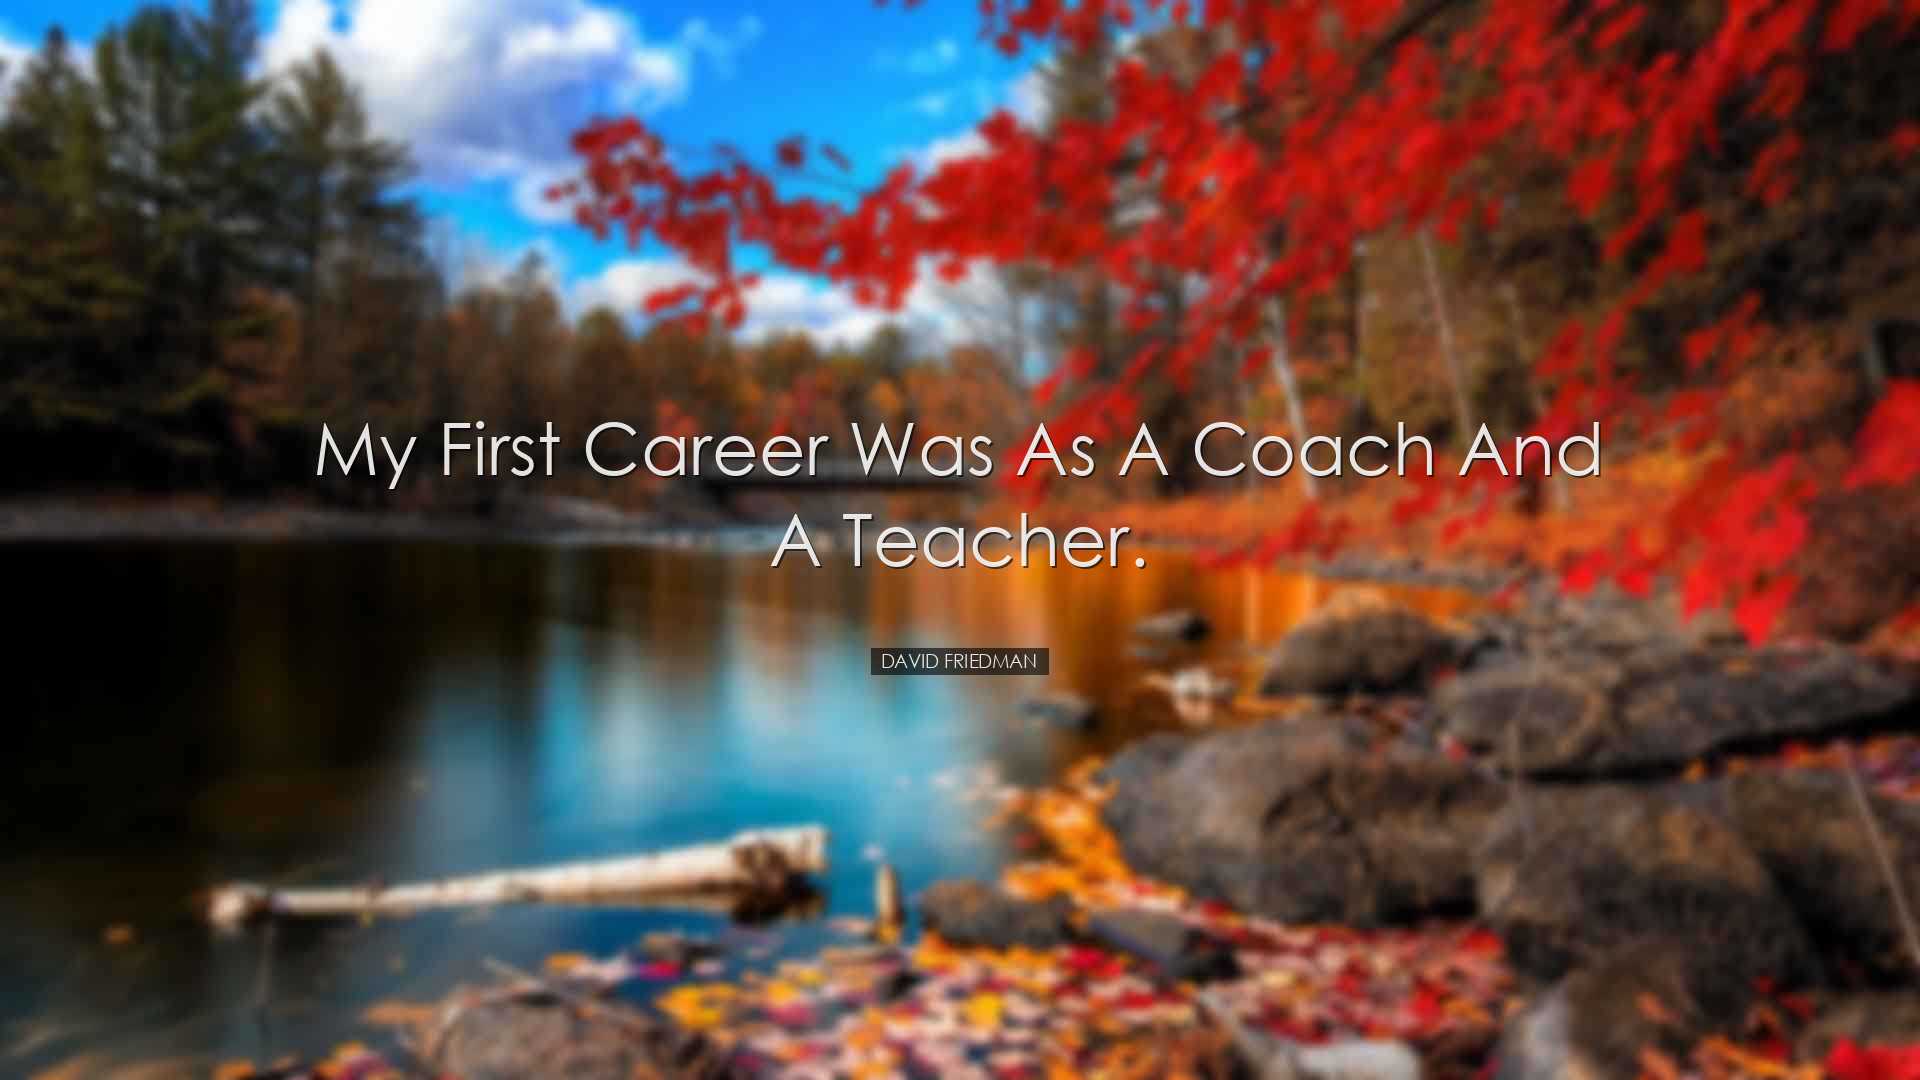 My first career was as a coach and a teacher. - David Friedman